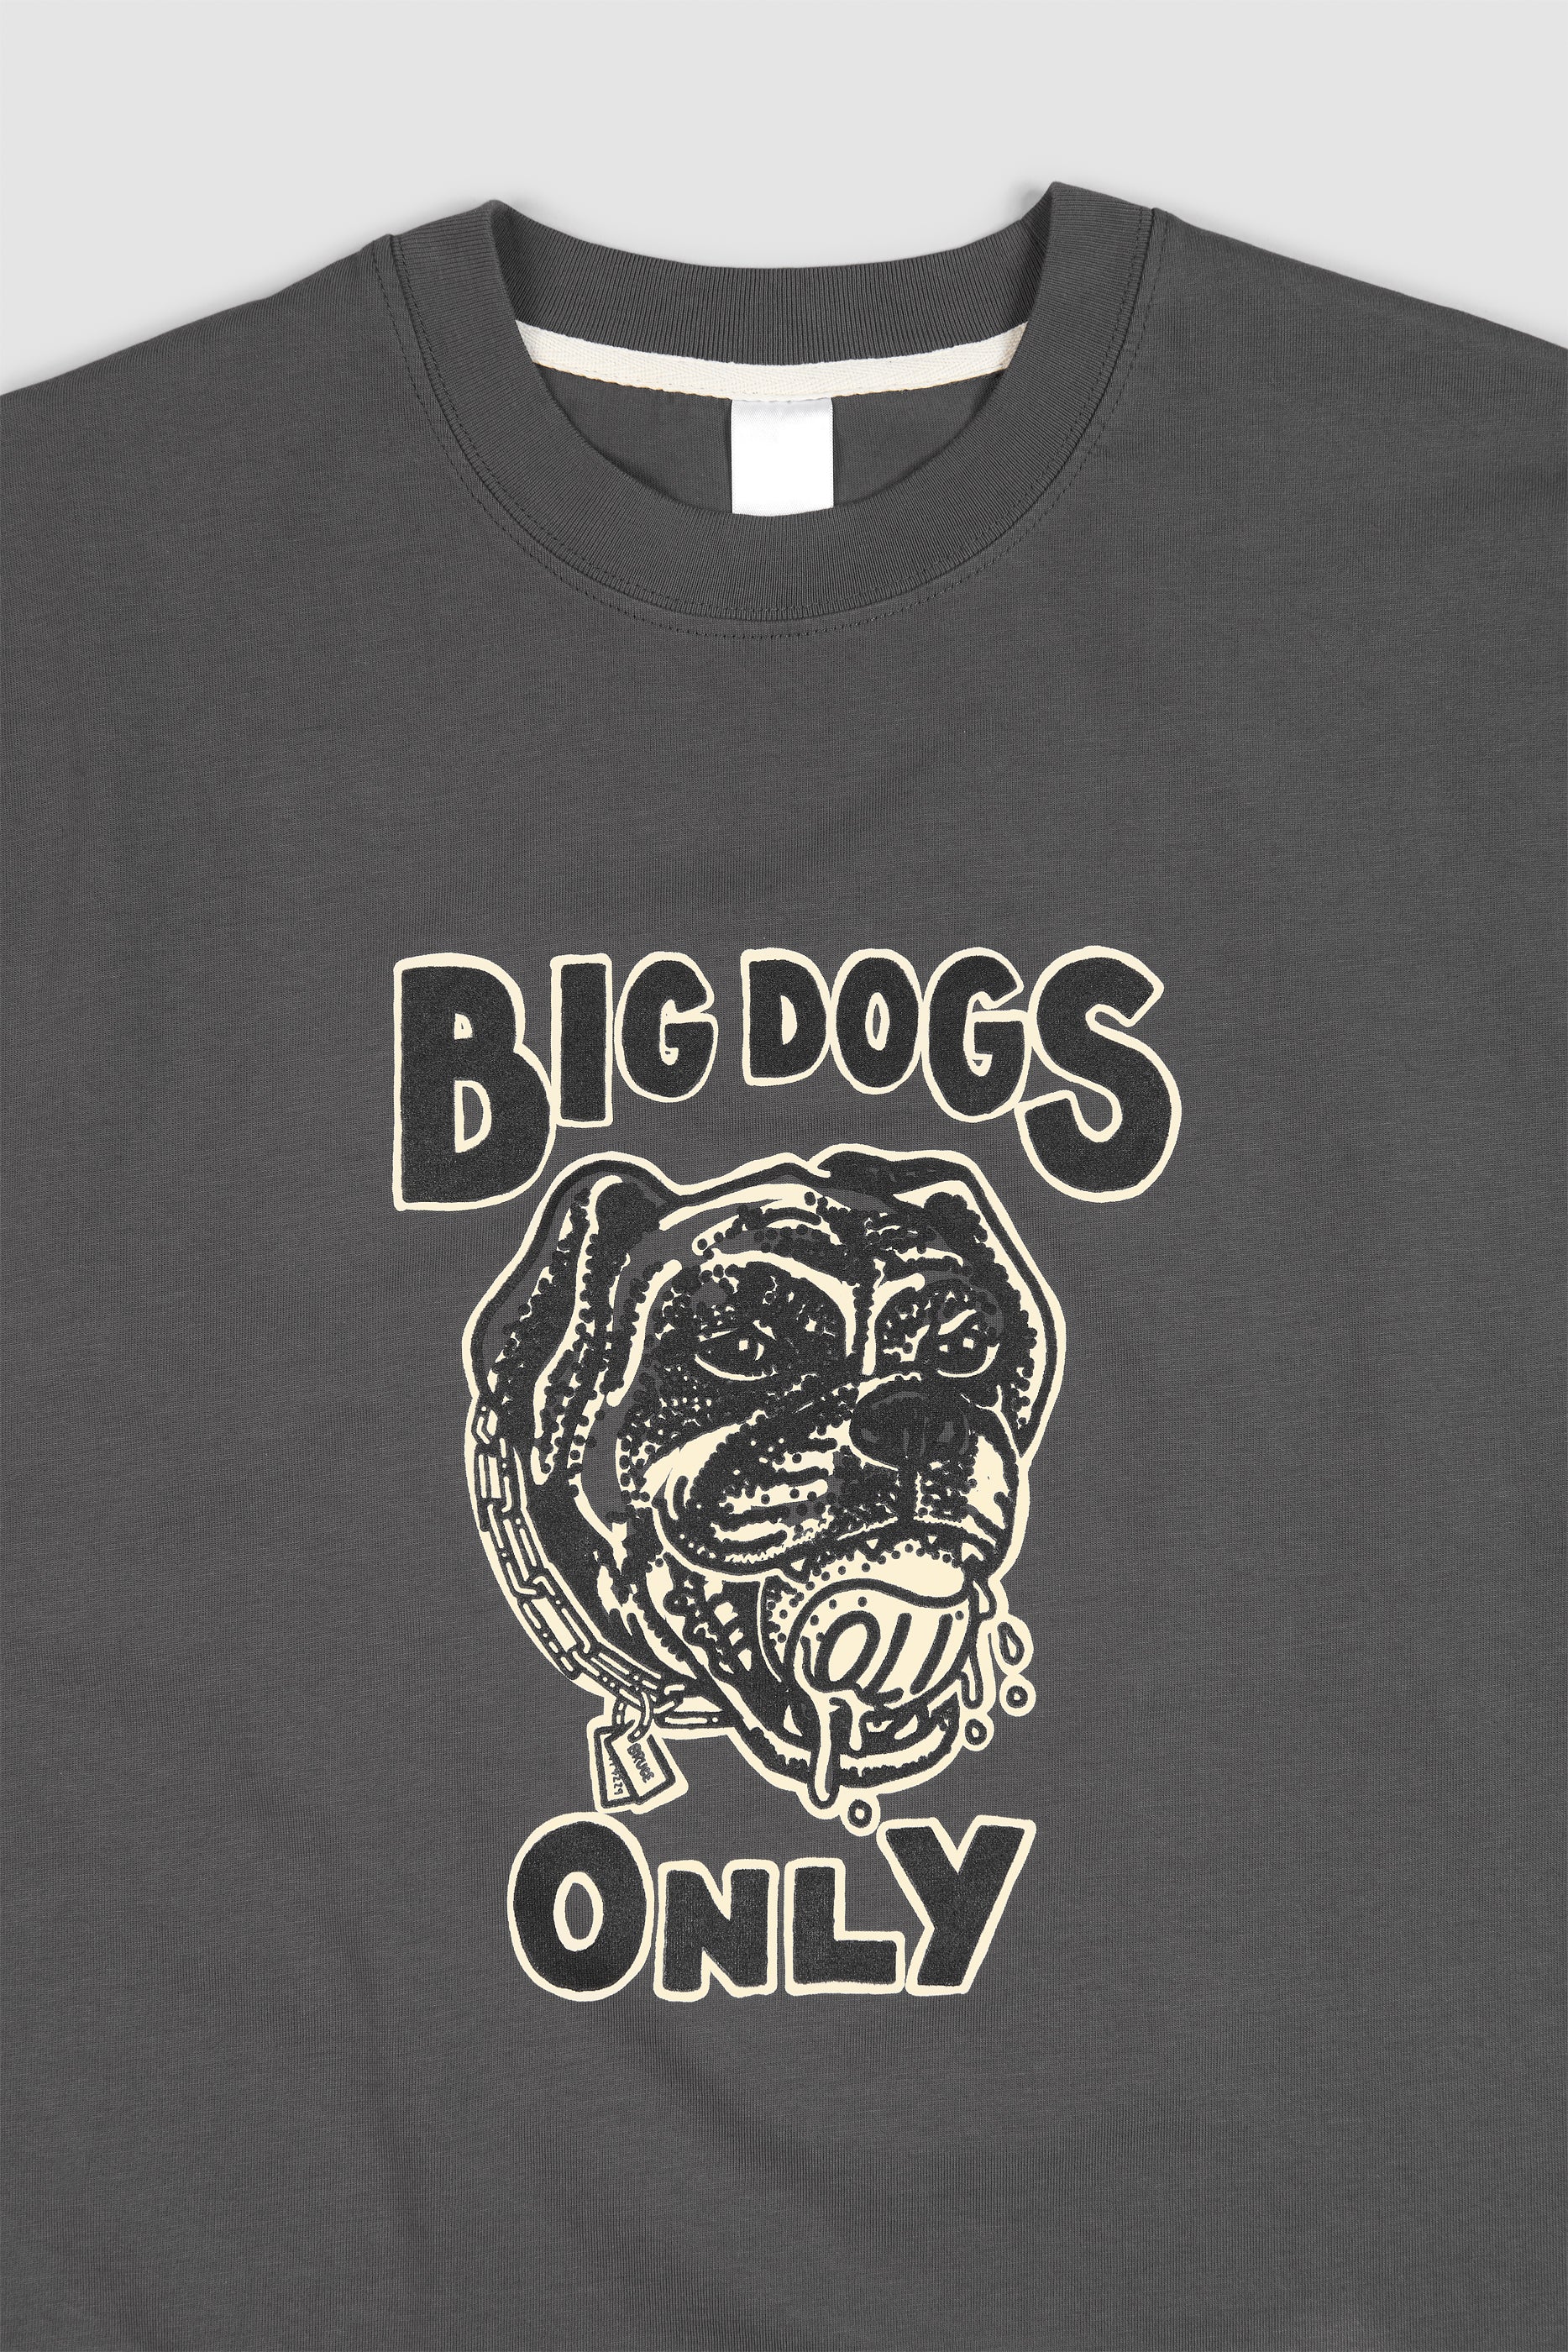 Big Dogs 3.0 T - Coal